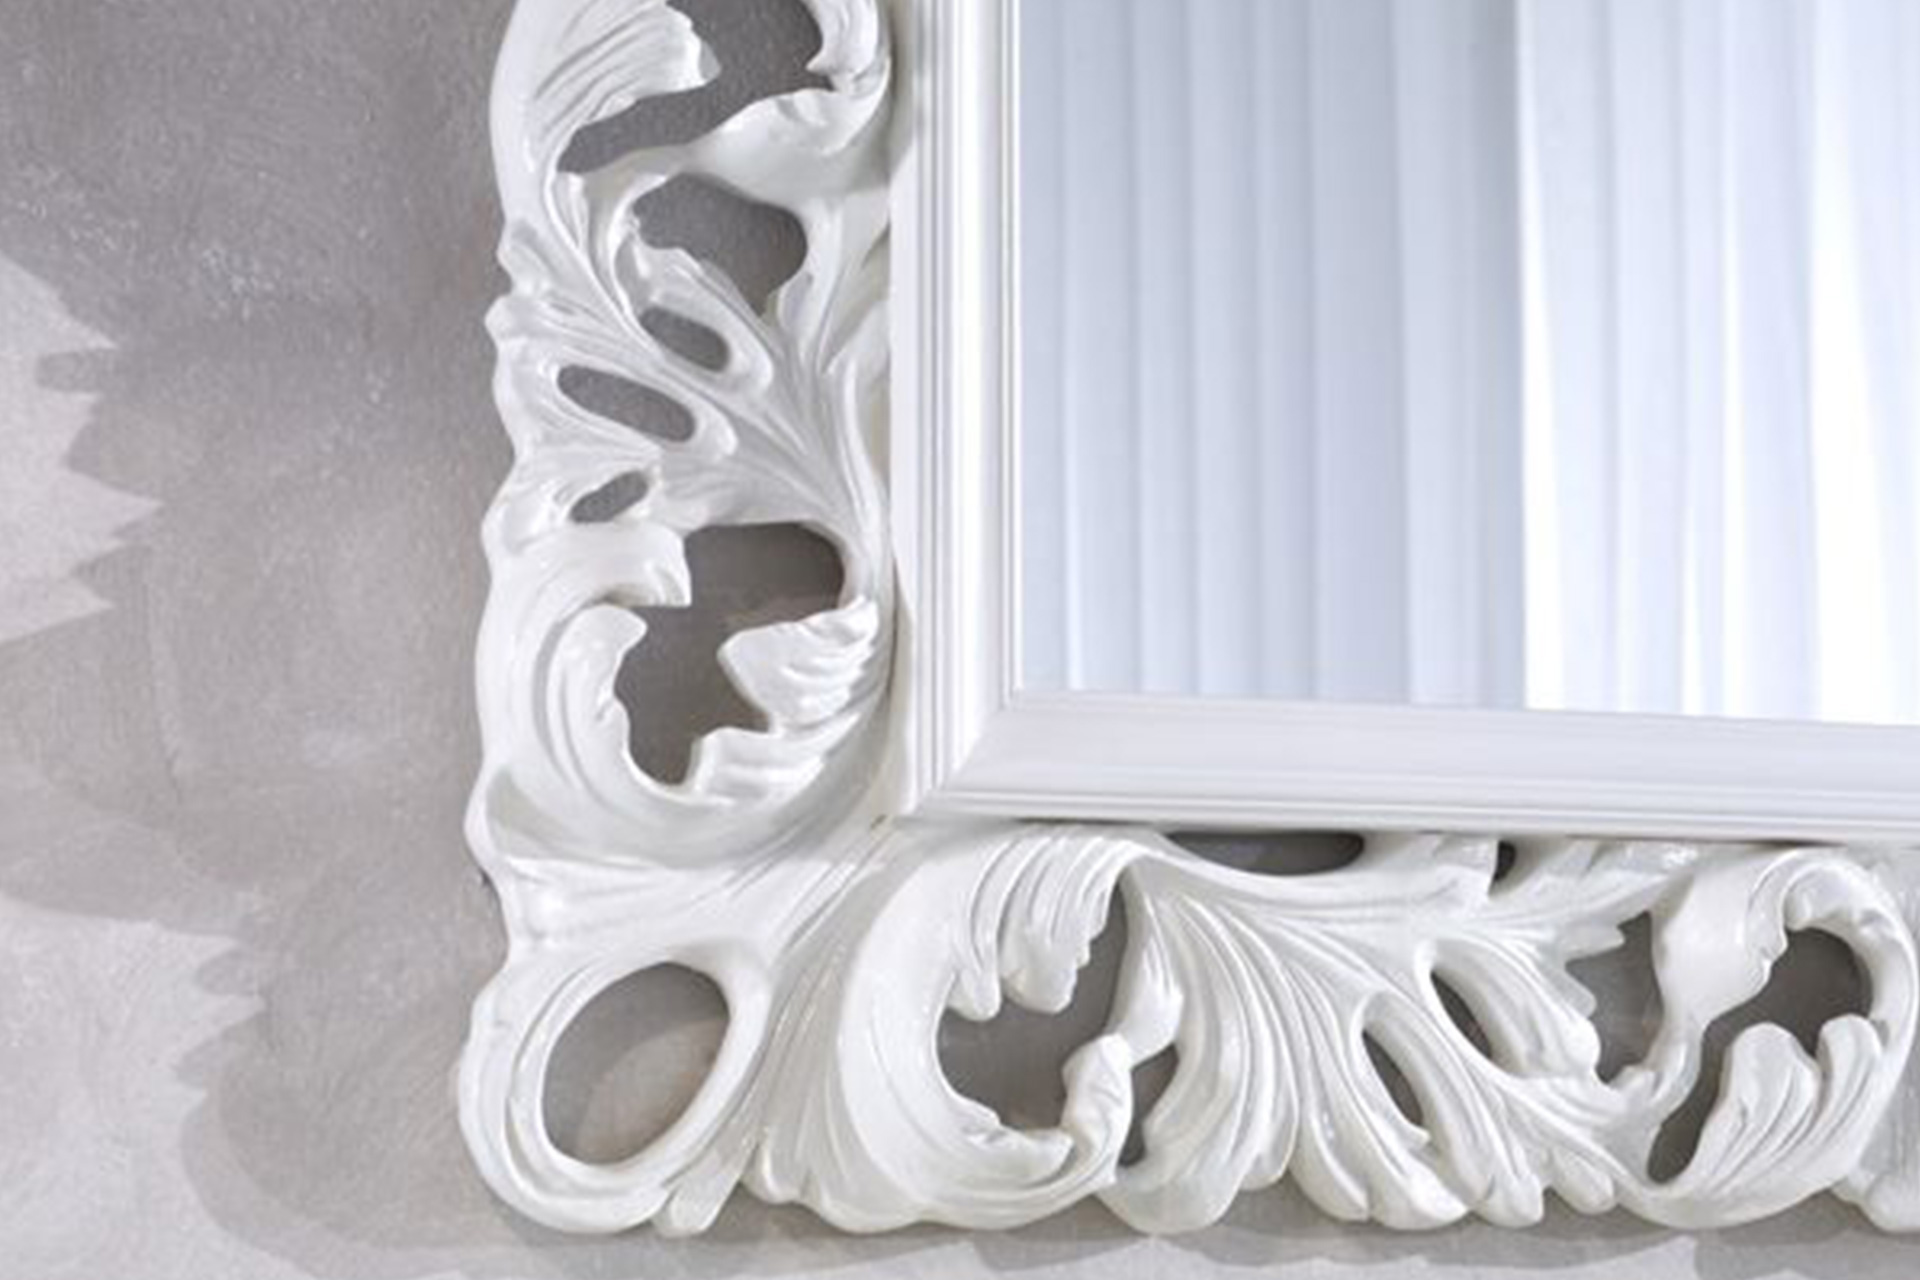 Modell Ella-Marie, rechteckig, Farbe: Hell weiß lackiert, klassisch, Herstellung: ASR-Rahmendesign Material: Holz, Spiegel glatt, Ansicht Ausschnitt Ecke unten links